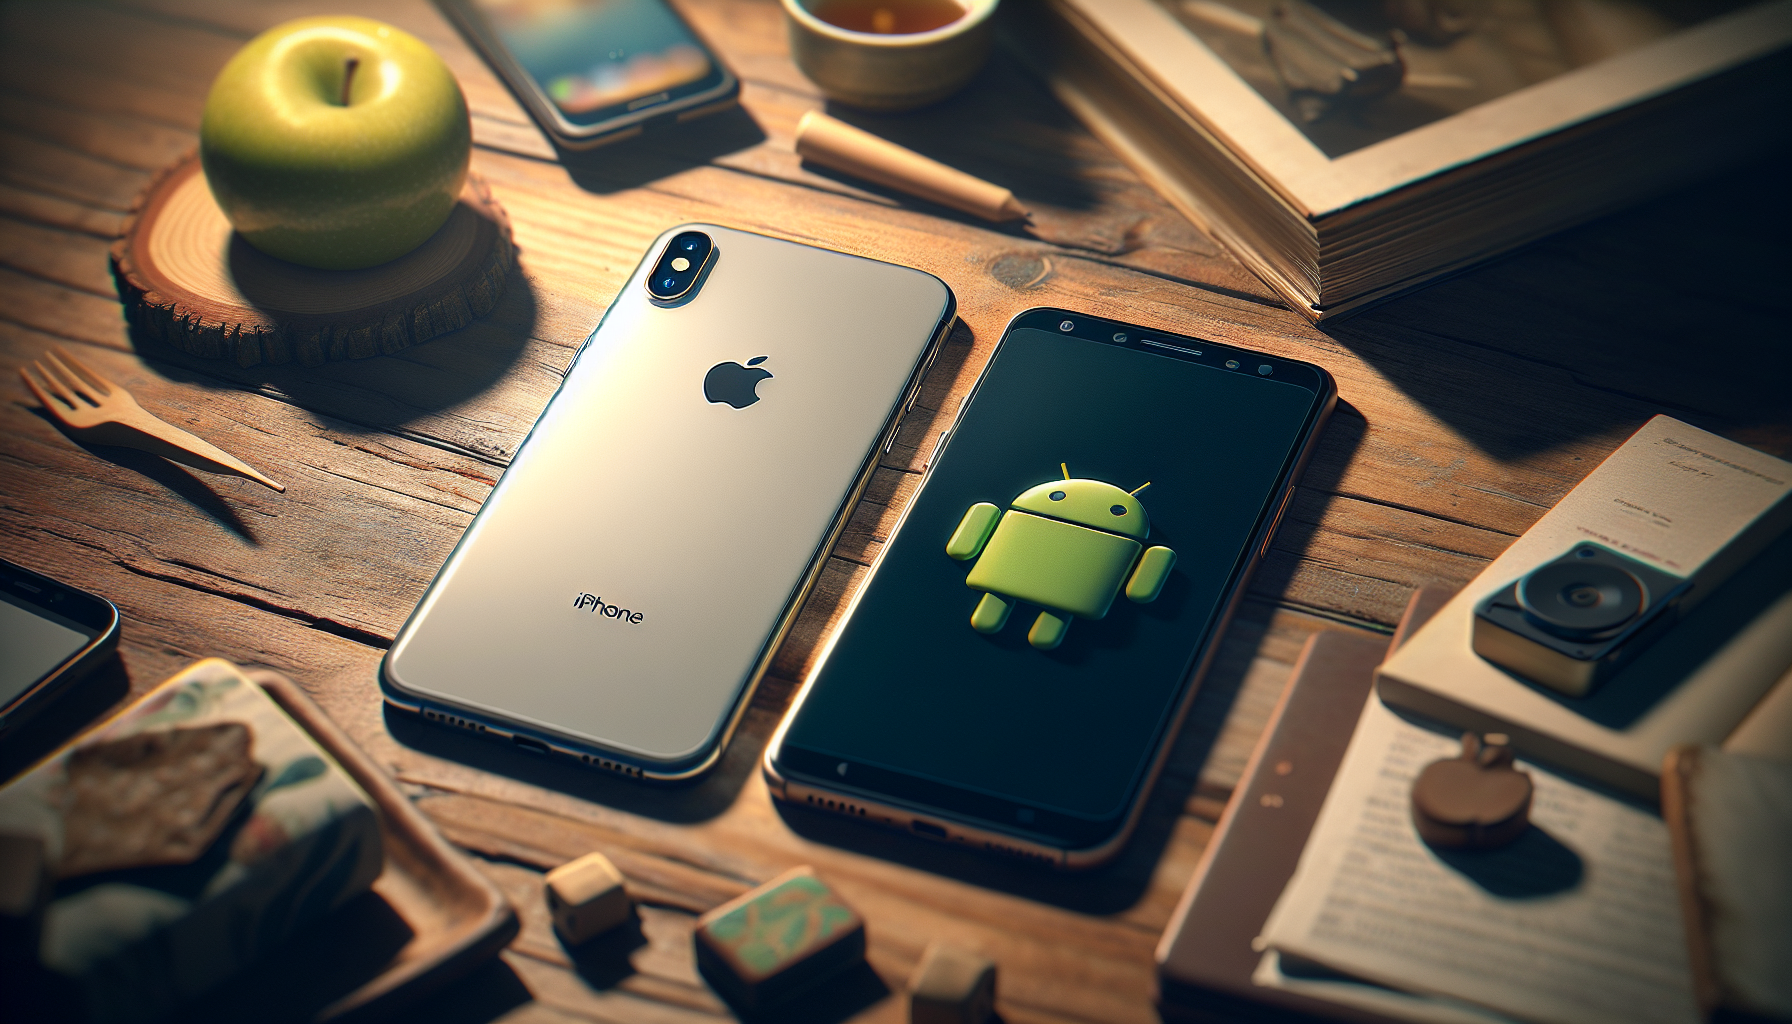 découvrez quel est le meilleur choix pour vous entre un iphone et un smartphone android grâce à notre guide complet.